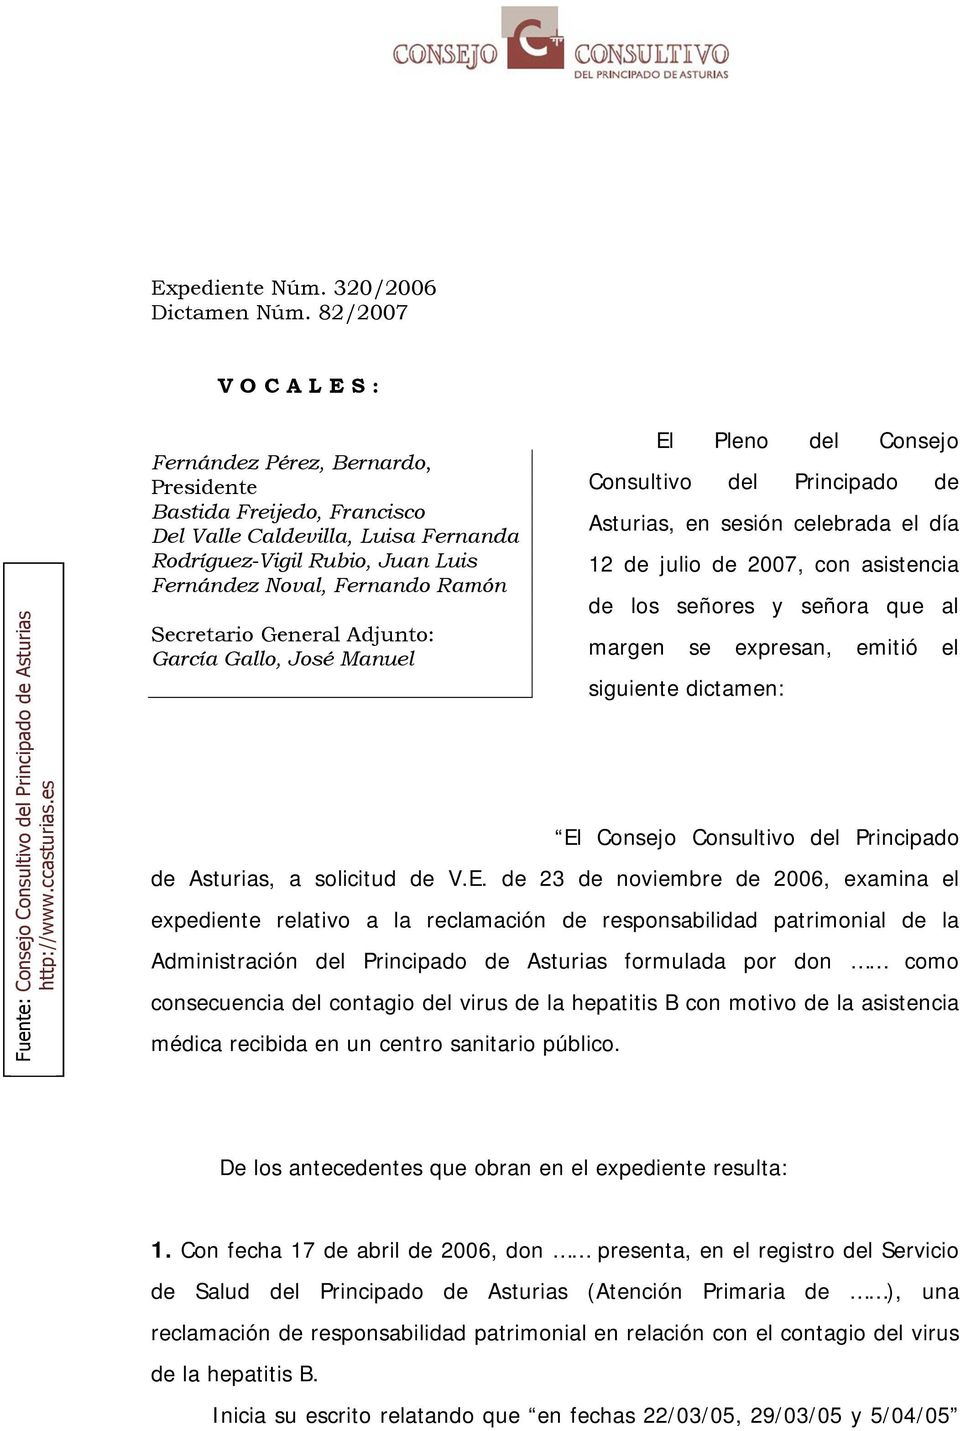 Secretario General Adjunto: García Gallo, José Manuel El Pleno del Consejo Consultivo del Principado de Asturias, en sesión celebrada el día 12 de julio de 2007, con asistencia de los señores y